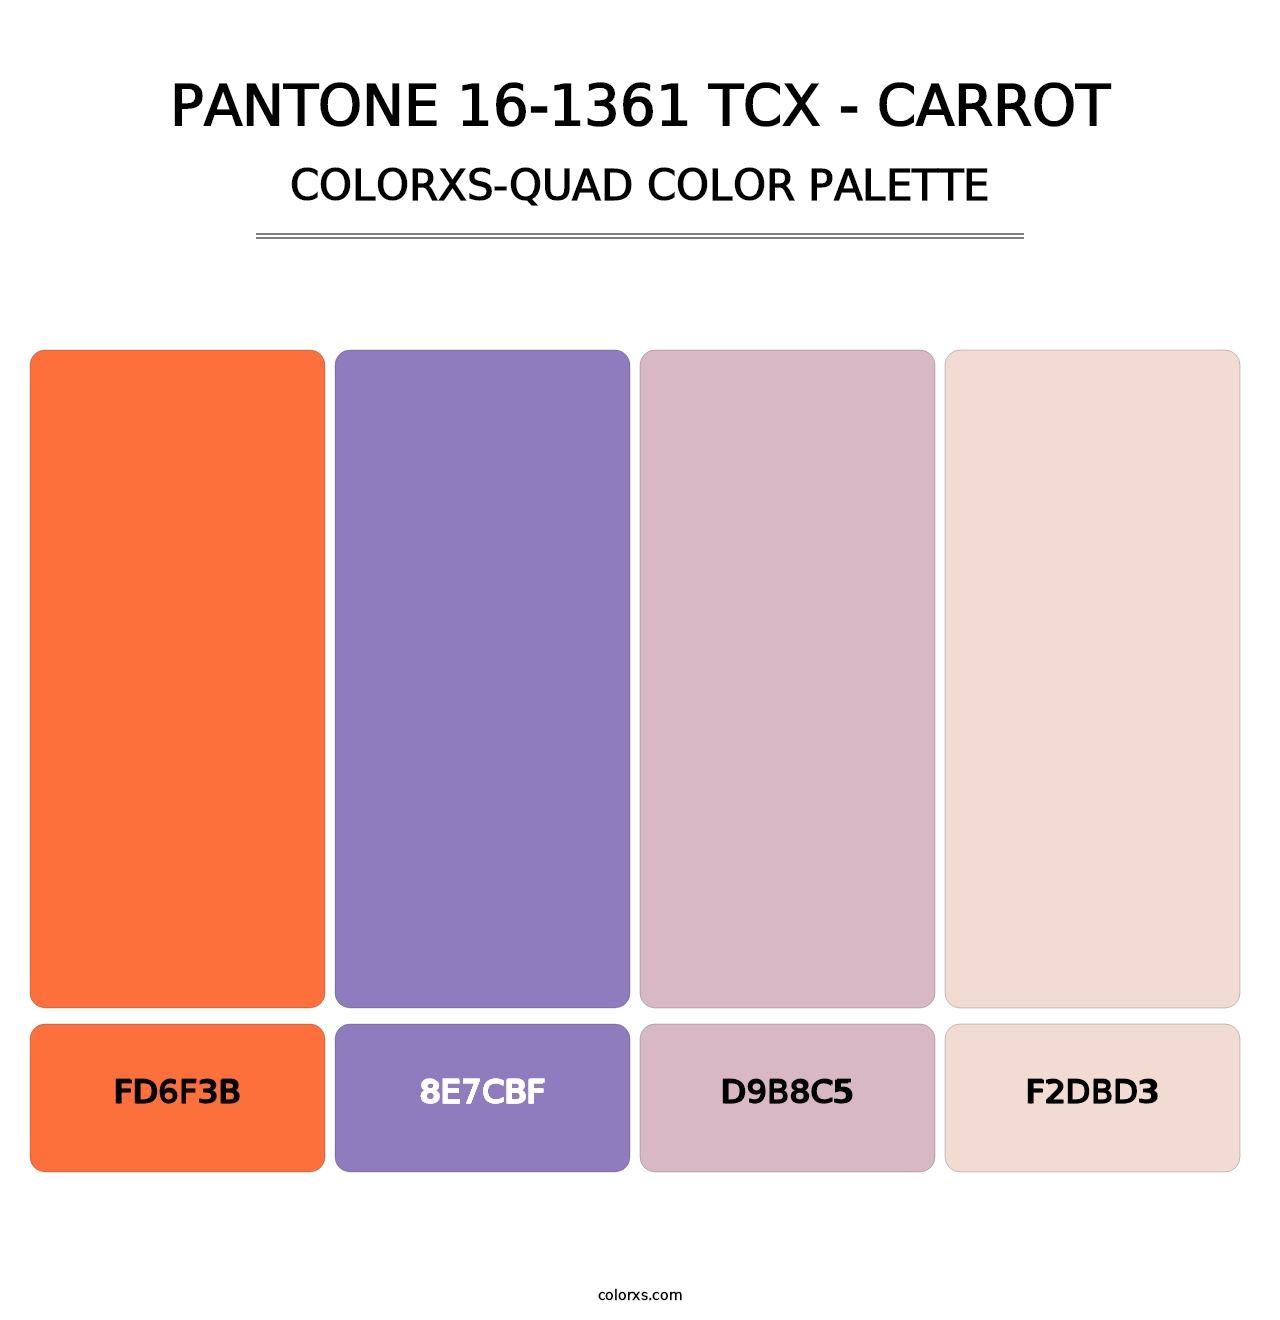 PANTONE 16-1361 TCX - Carrot - Colorxs Quad Palette